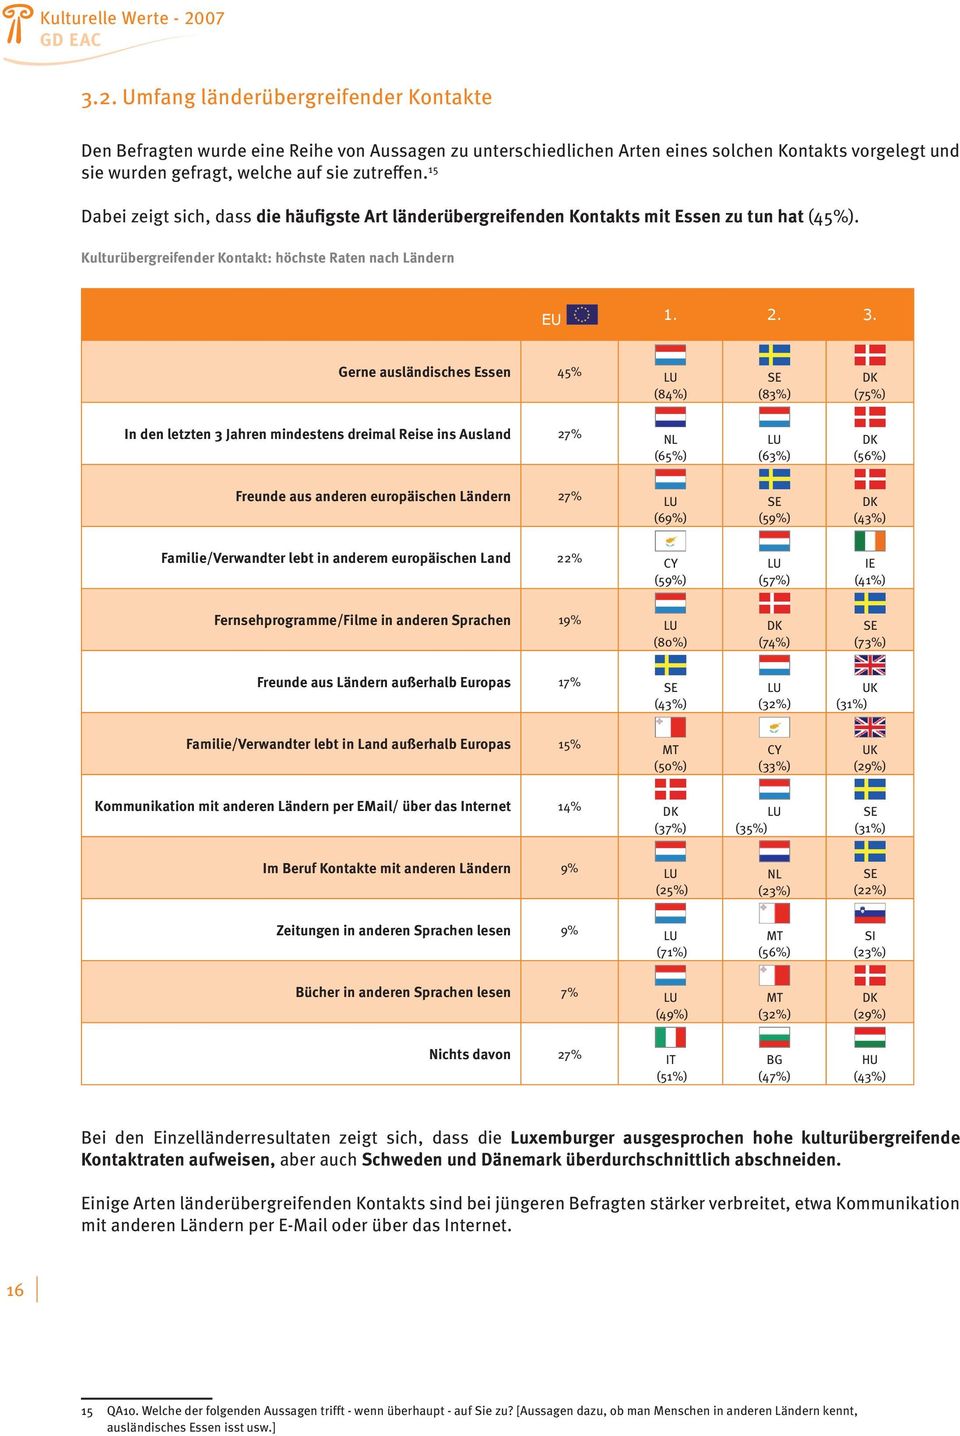 Gerne ausländisches Essen 45% LU (84%) SE (83%) DK (75%) In den letzten 3 Jahren mindestens dreimal Reise ins Ausland 27% NL (65%) LU (63%) DK (56%) Freunde aus anderen europäischen Ländern 27% LU